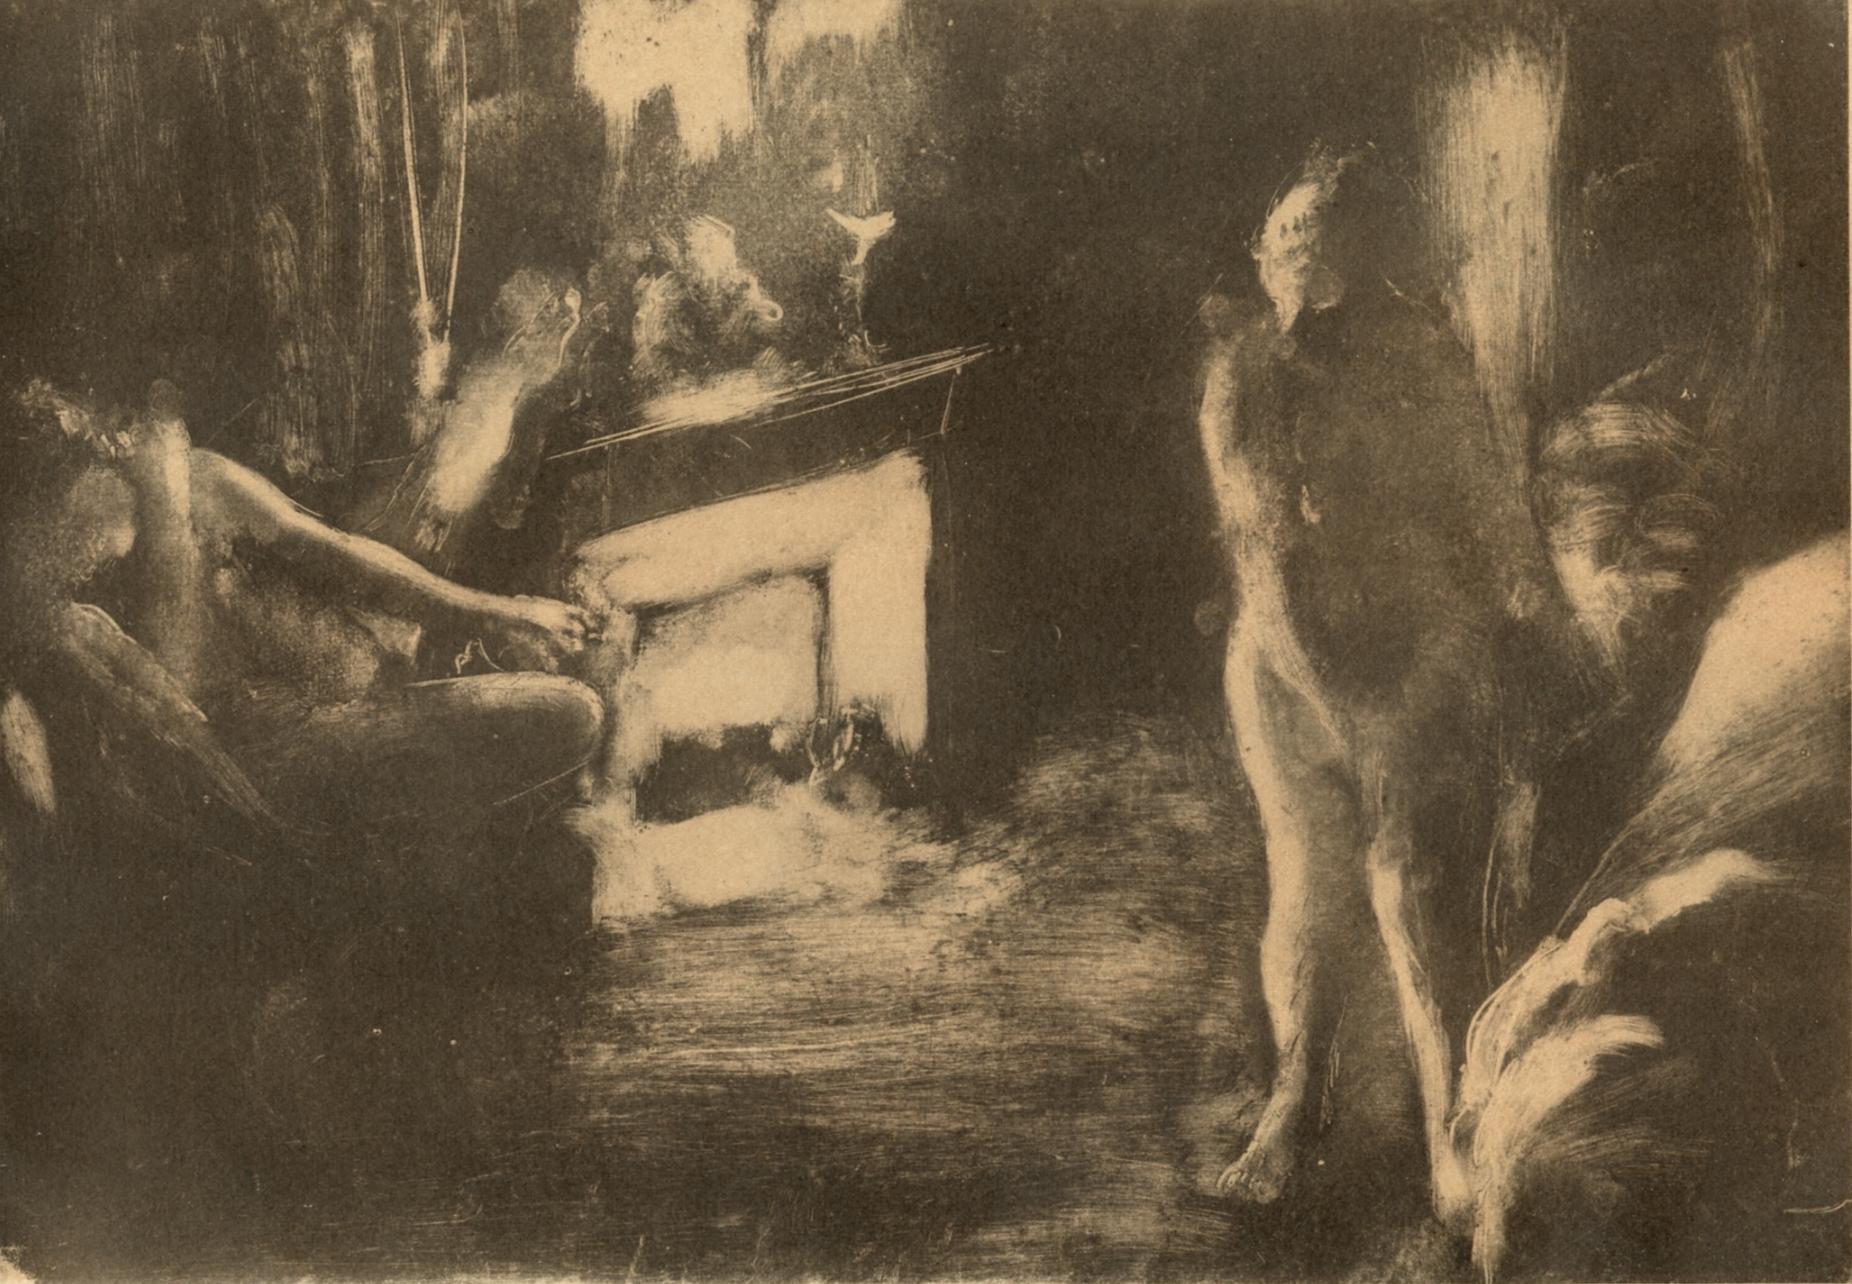 Degas, Devant la Cheminee, Les Monotypes (after)